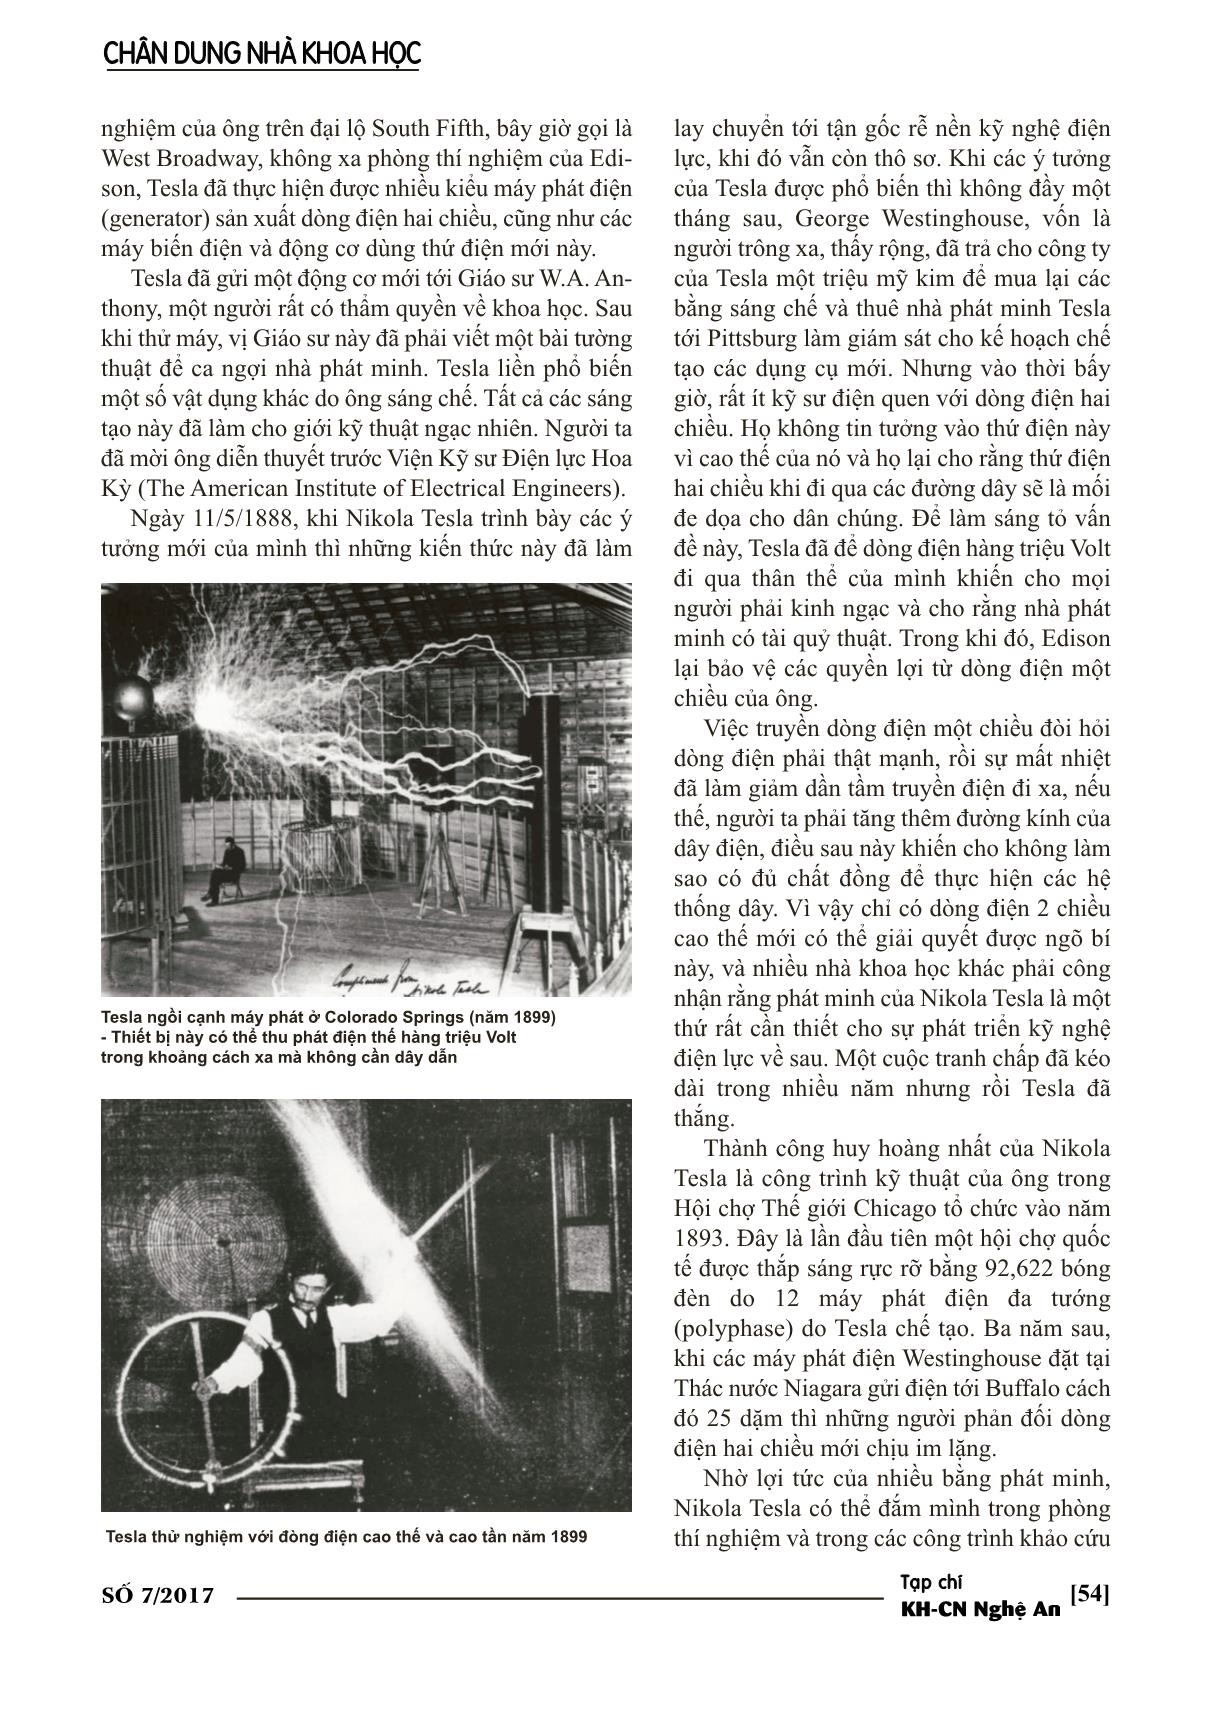 Nikola Tesla thiên tài về điện hai chiều trang 4